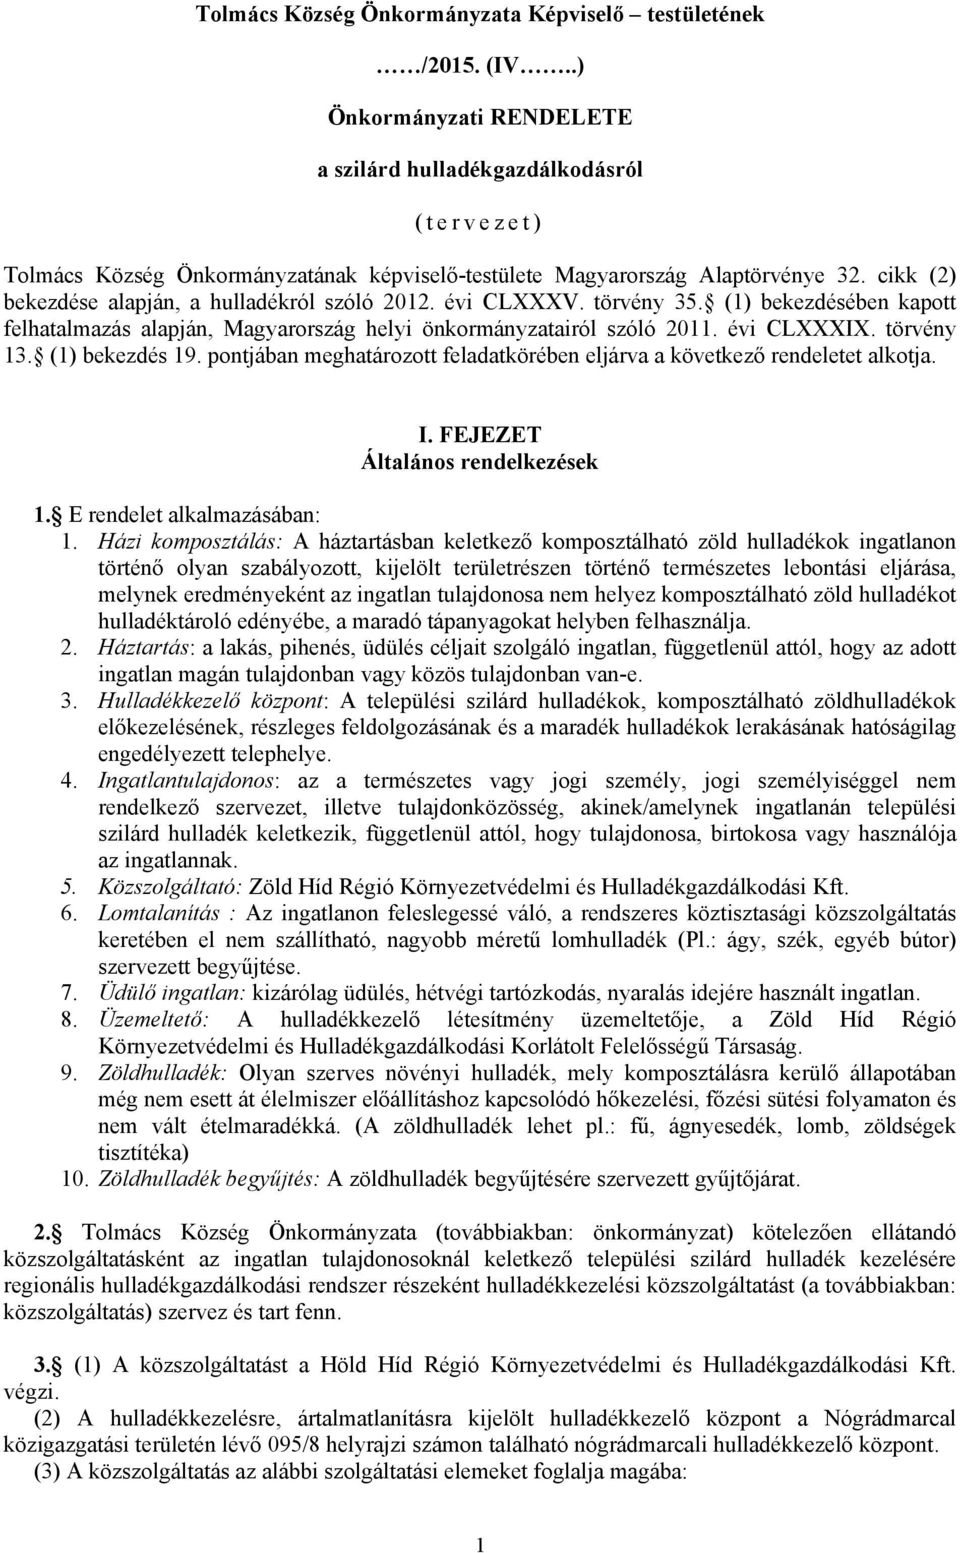 cikk (2) bekezdése alapján, a hulladékról szóló 2012. évi CLXXXV. törvény 35. (1) bekezdésében kapott felhatalmazás alapján, Magyarország helyi önkormányzatairól szóló 2011. évi CLXXXIX. törvény 13.